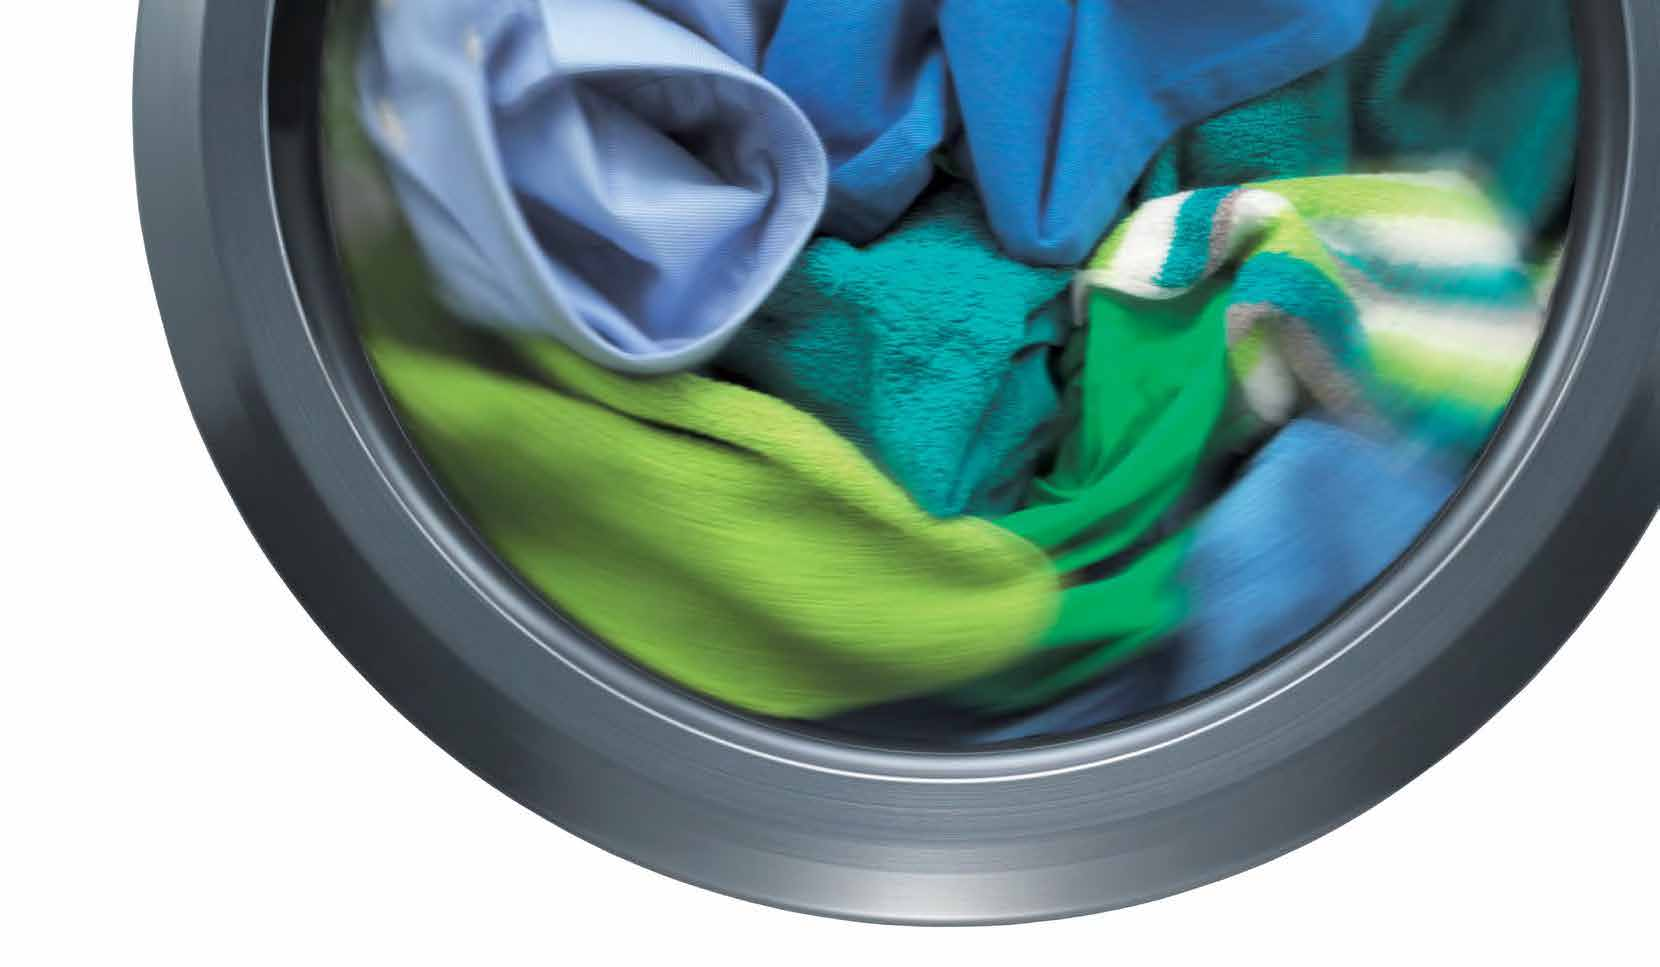 Mosás Hogyan érje el a legjobb eredményt mosógépével? Gondosan válogassa szét a ruhákat A sikeres mosás titka, hogy a ruhákat megfelelően szét kell válogatni, mielőtt betöltené őket a mosógépbe.